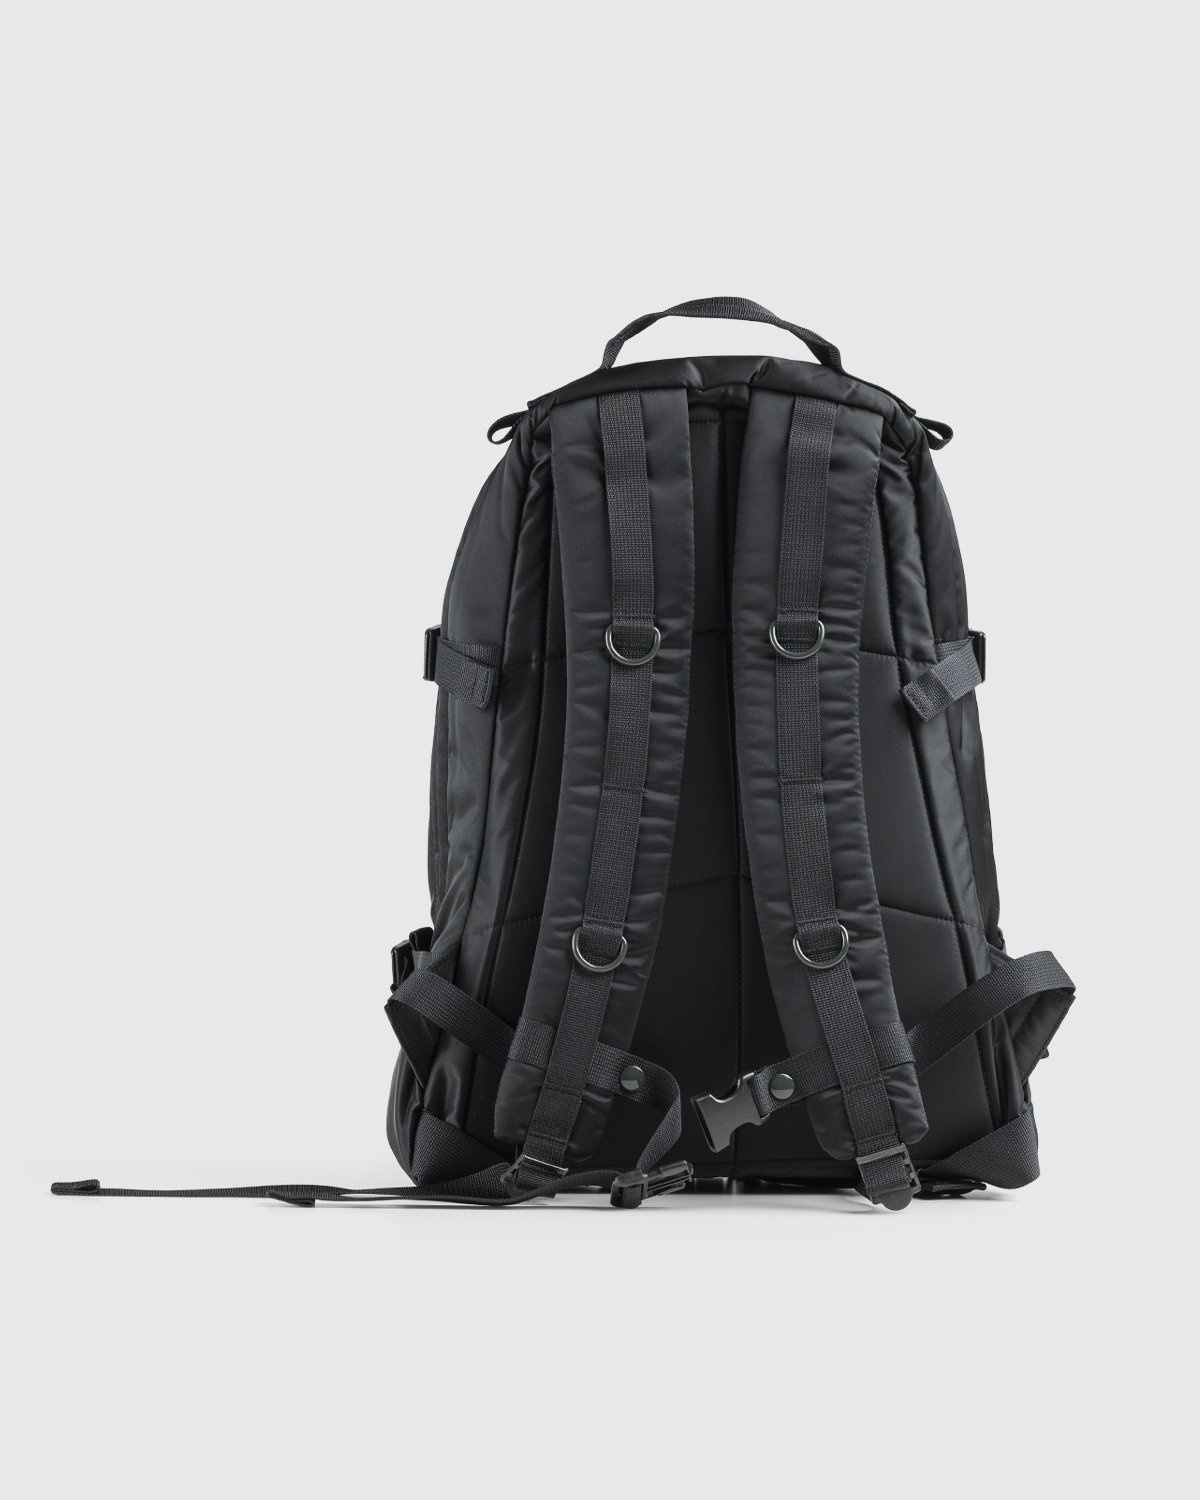 Porter-Yoshida & Co. – Tanker Padded Day Pack Black - Backpacks - Black - Image 2